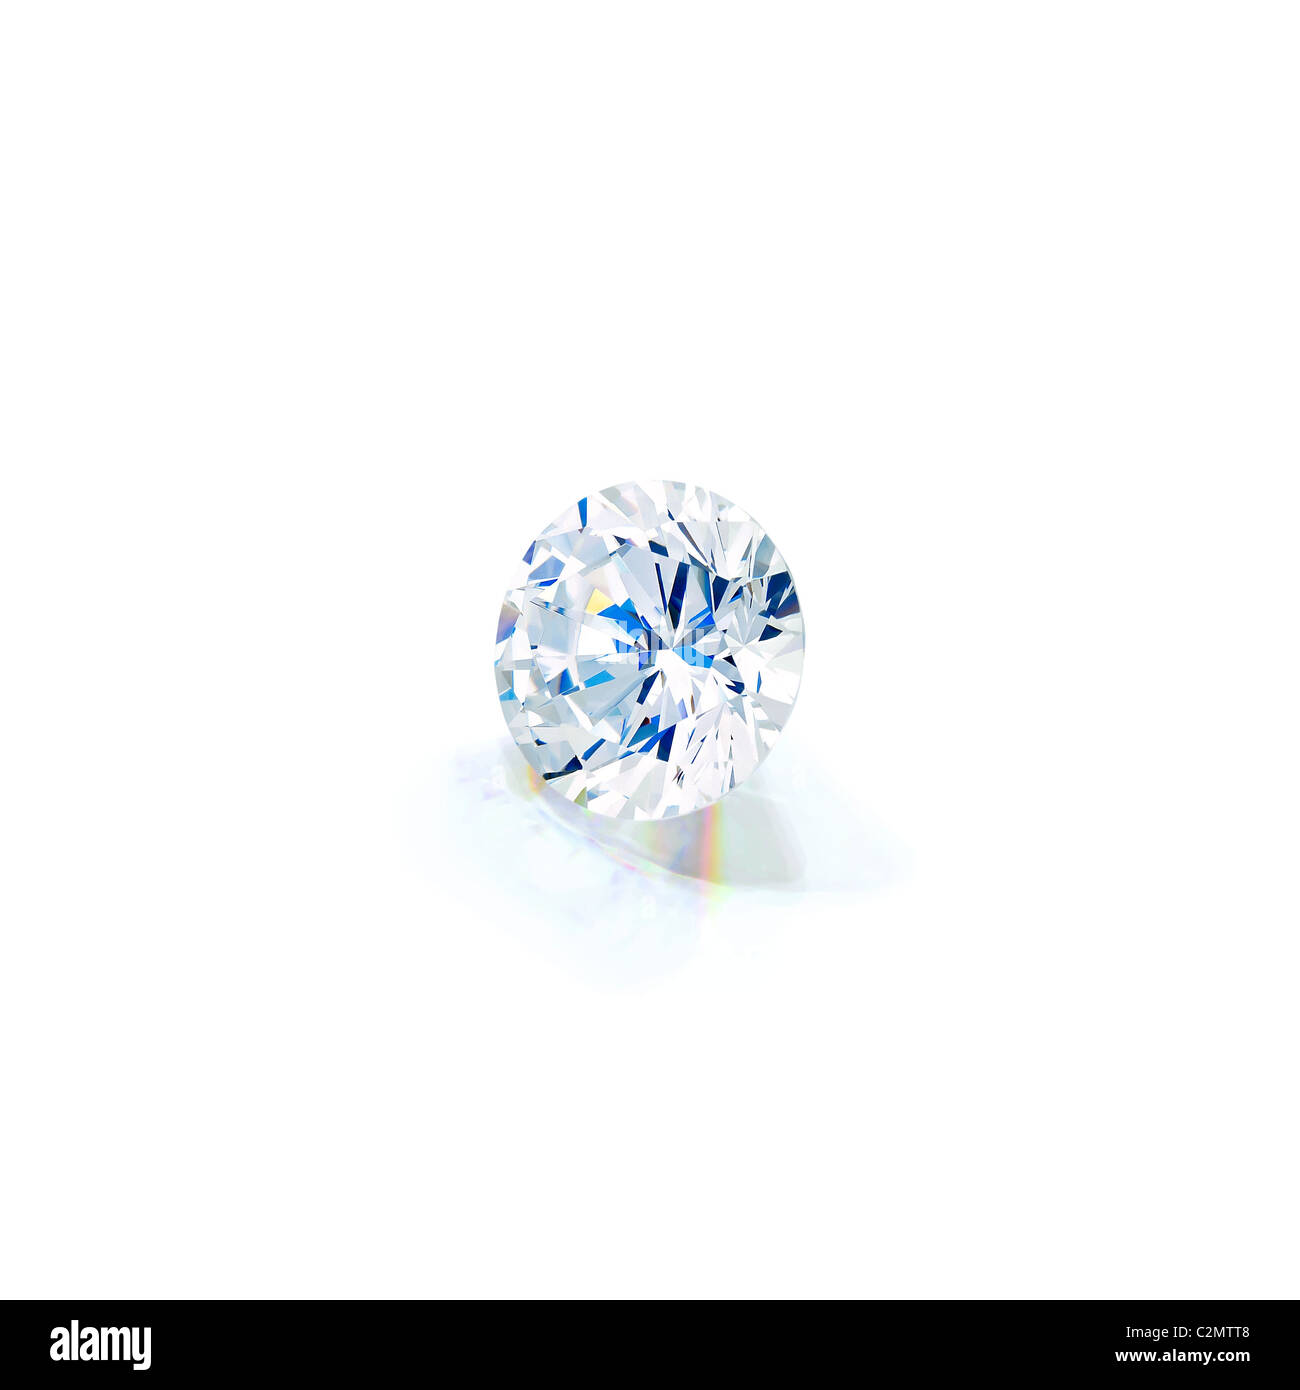 Vue iso de diamant taille brillant isolés contre fond blanc avec plein de réflexion partielle clipping path Banque D'Images